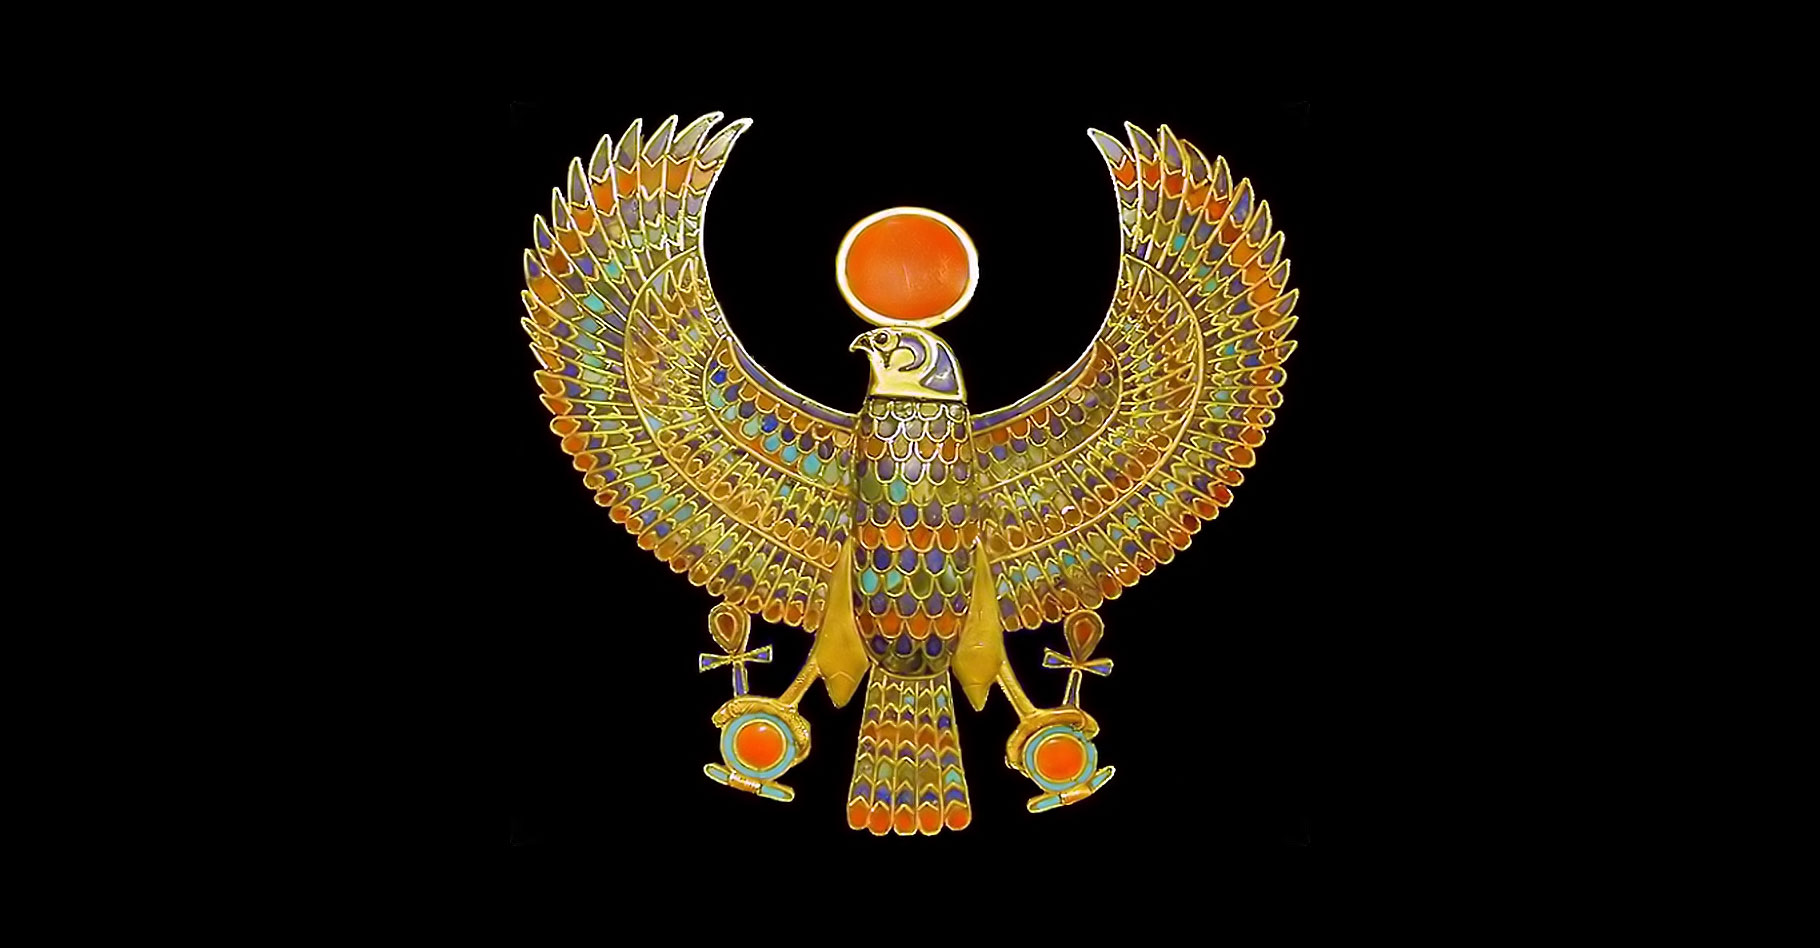 Le pectoral du pharaon, l'un des joyaux retrouvés au plus près de la momie. Ce bijou est un ornement vestimentaire ou corporel, orné de pierres semi-précieuses, turquoise, cornaline, lapis-lazuli, et de pâte de verre multicolore. Comme son nom l’indique, ce bijou pectoral se place sur le thorax, considéré chez les civilisations anciennes comme le siège de l’âme. Porté à cet endroit, il est supposé assurer la protection magique ou divine, en l’occurrence, ici, celle du&nbsp;dieu Horus. Le faucon représente le dieu Horus, portant le disque solaire et déployant ses ailes en signe de souveraineté. Dans ses griffes, des attributs des dieux égyptiens, la croix Ânkh, signe de vie, et l’anneau Shen, signe d’éternité. Ce pectoral fait partie de 143 bijoux retrouvés, enfouis dans les bandelettes entourant la momie. ©&nbsp;Jean-Pierre Dalbéra, Flickr, &nbsp;CC by 2.0